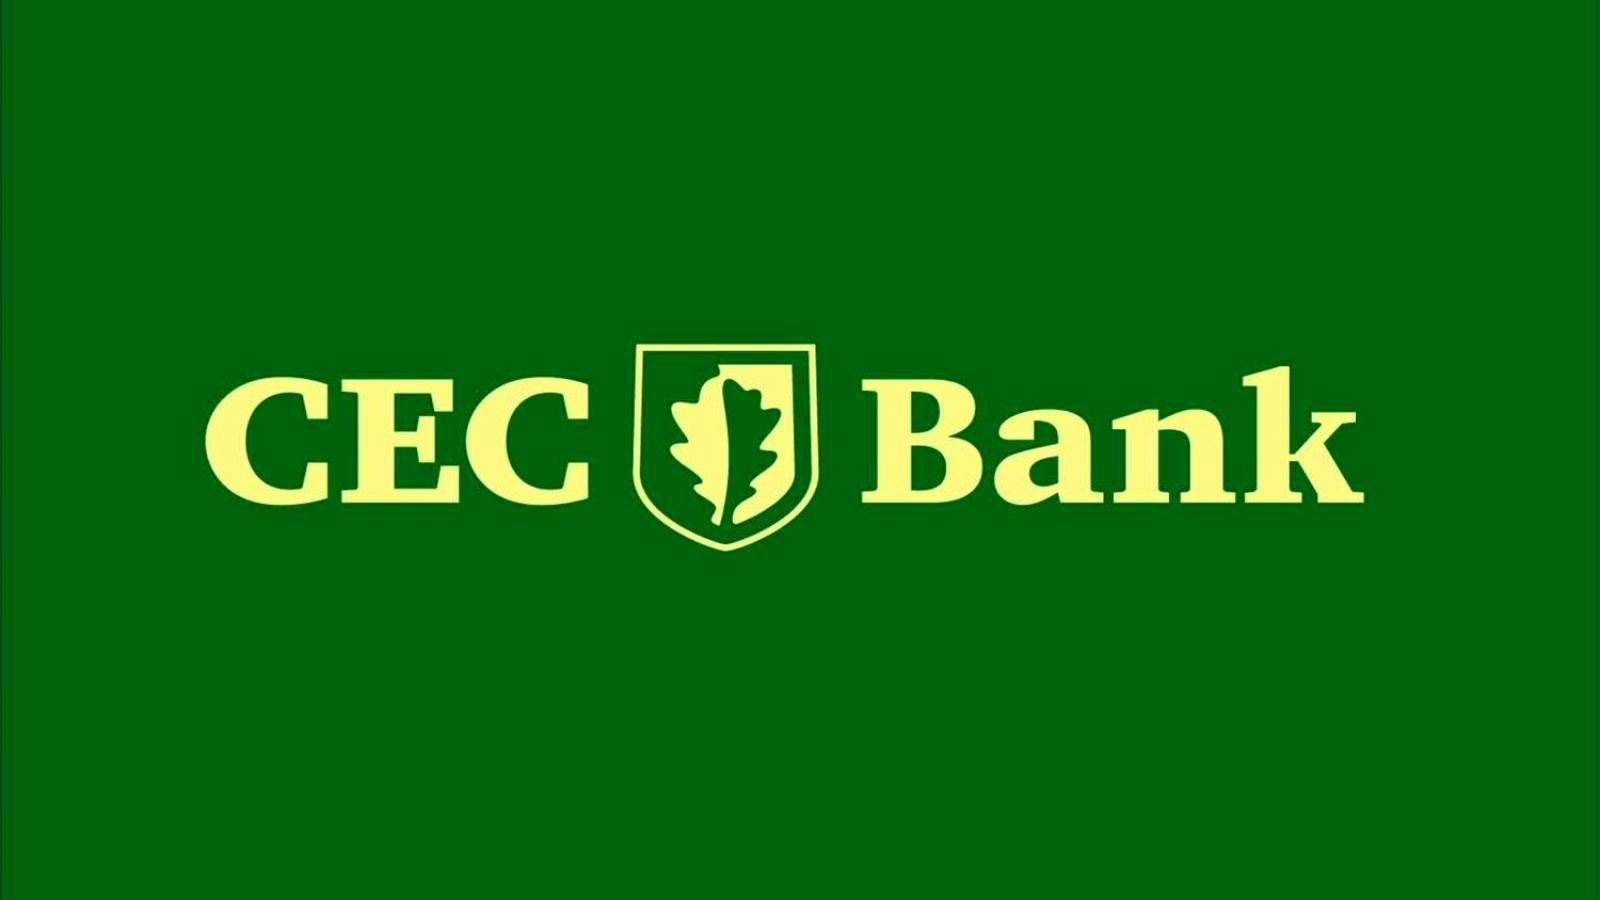 CEC Bank VIKTIG information VARNING Utfärdad till rumänska kunder